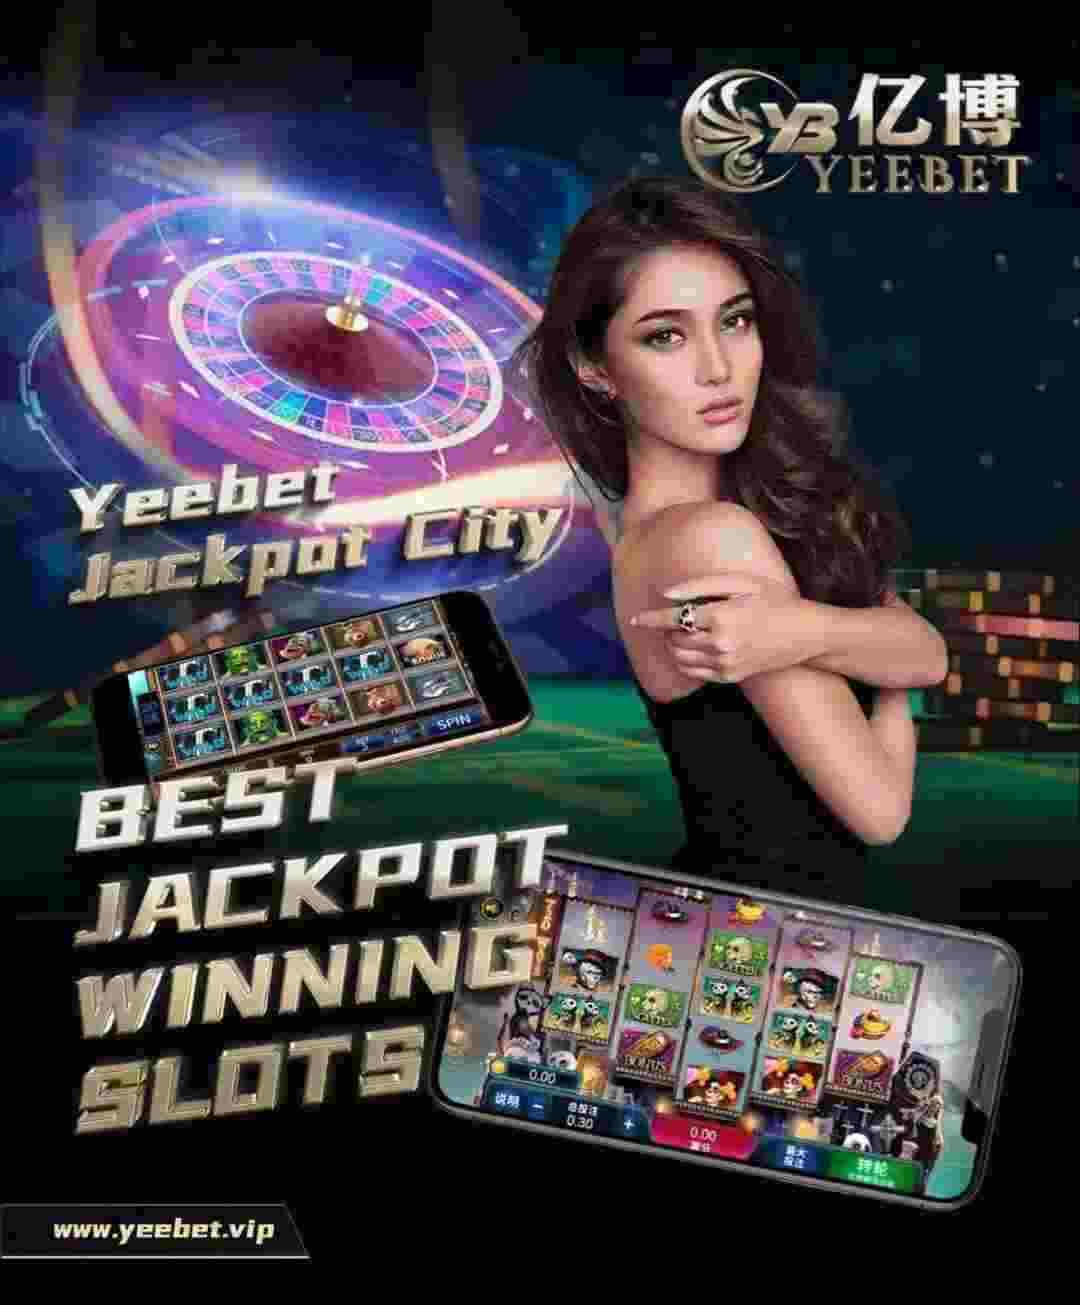 Yeebet Live Casino nhanh chóng tạo dấu ấn những ngày đầu